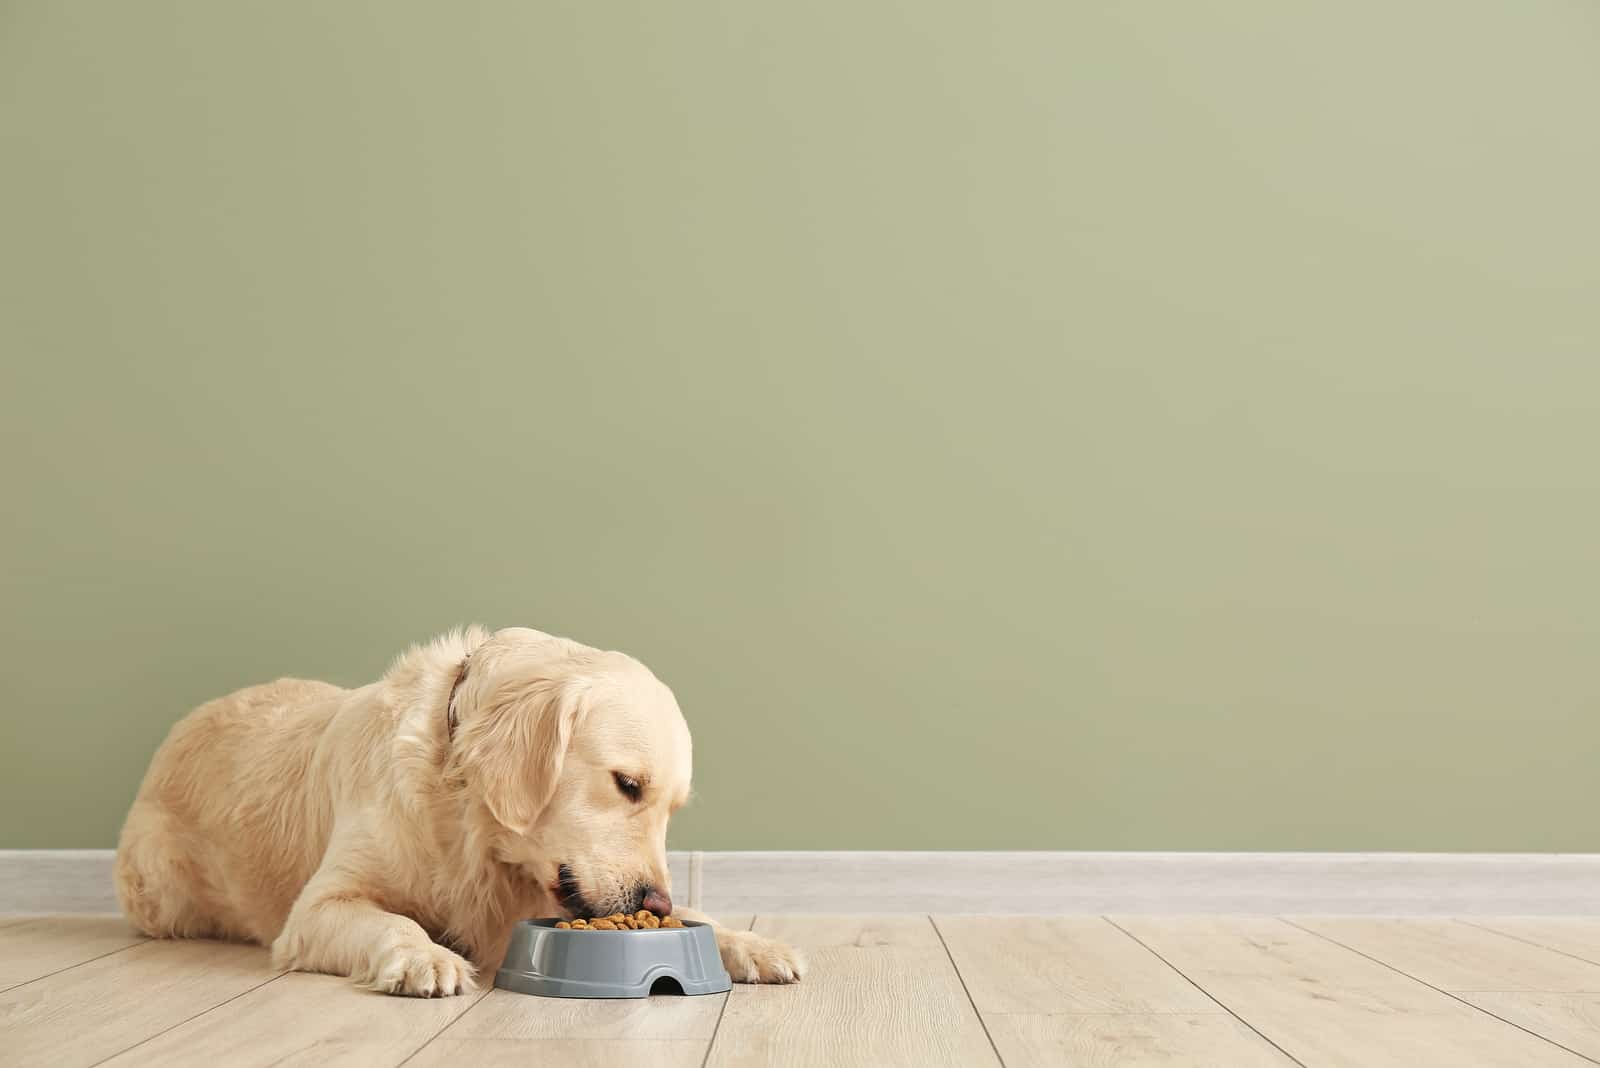 Wie oft den Hund füttern? Ein oder zweimal am Tag?